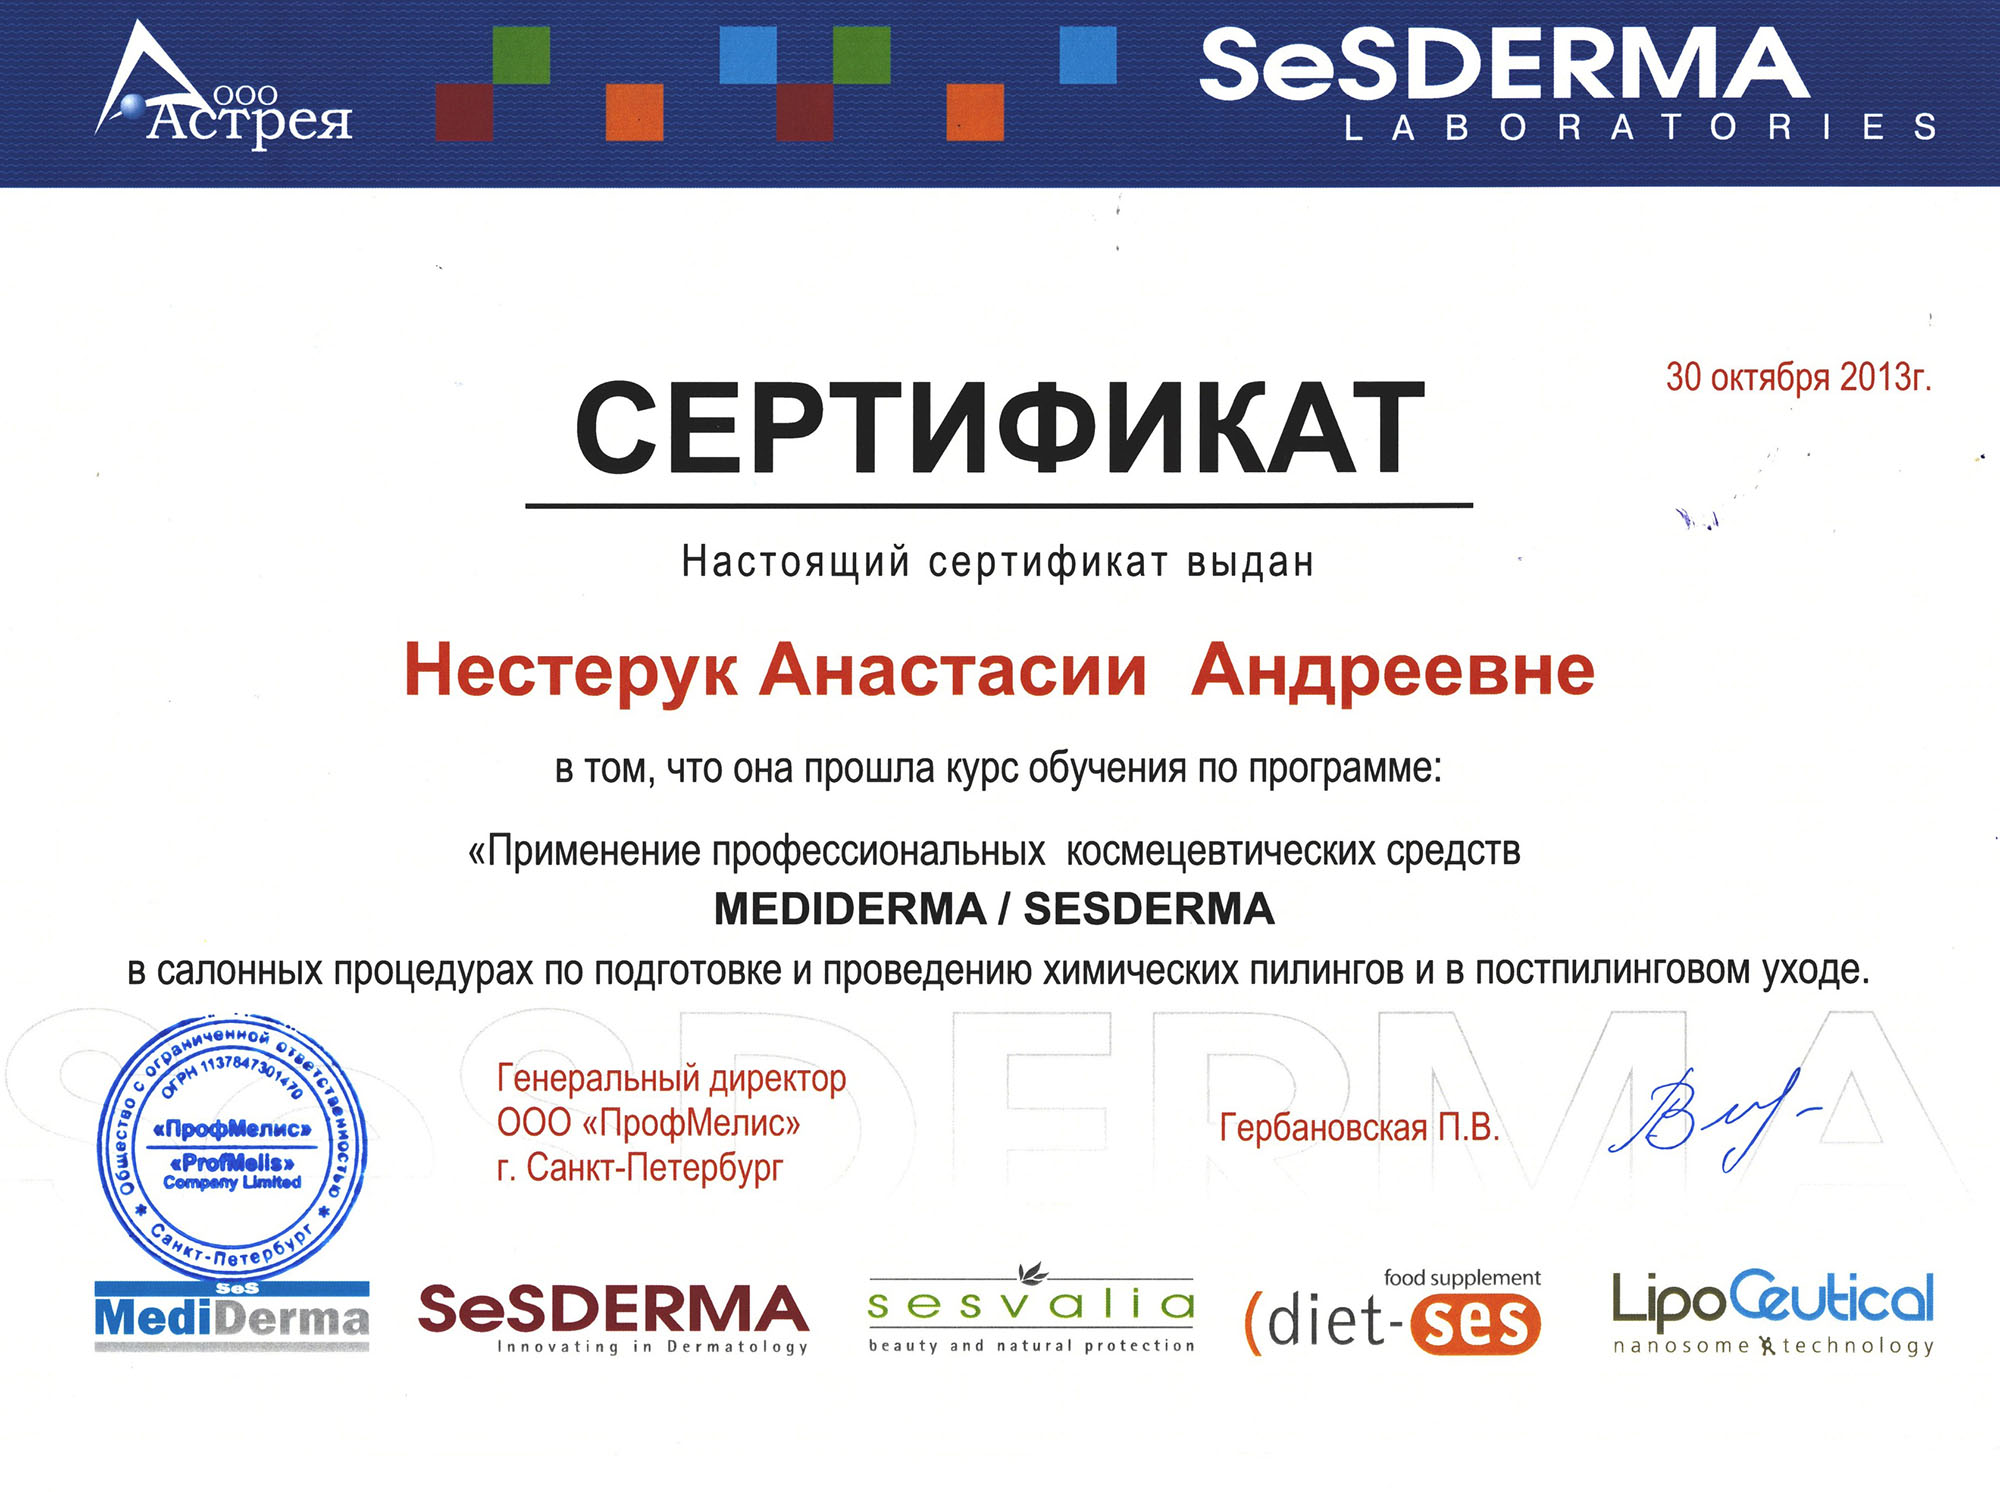 Сертификат — Программа «Применение профессиональных космецевтических средств». Яблочко Анастасия Андреевна